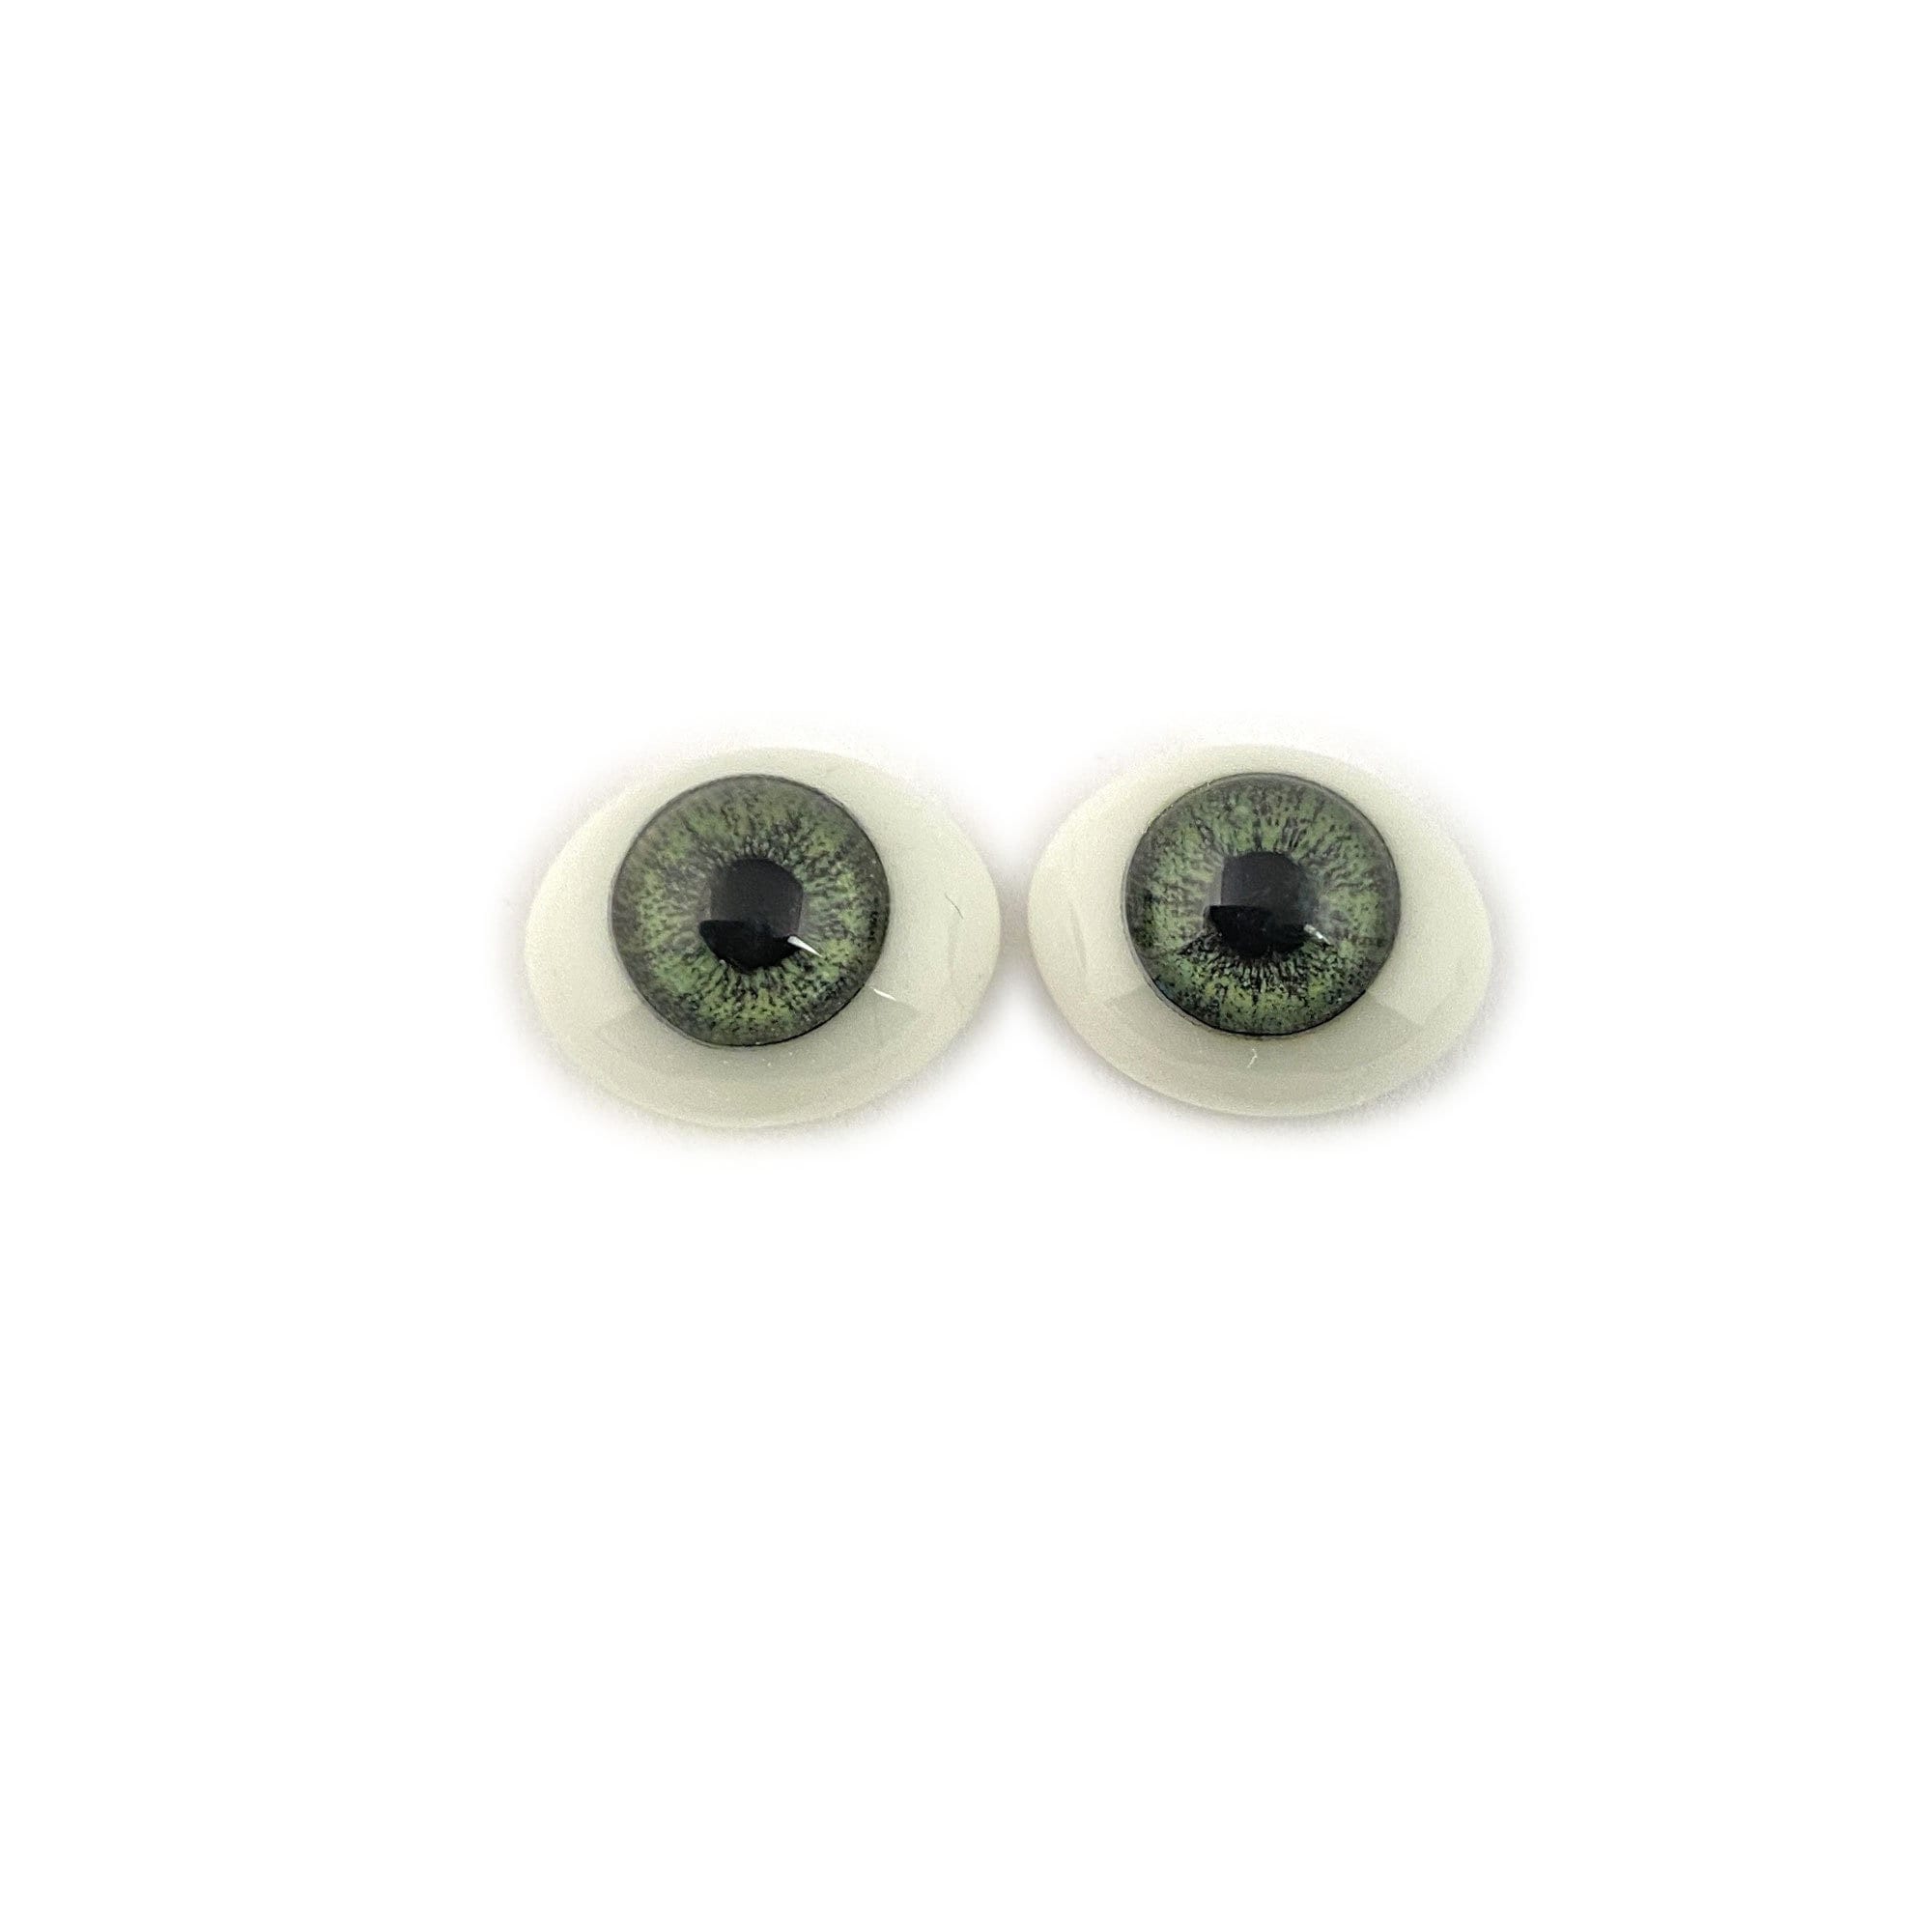 Hazel Craft Eyes – Suncatcher Craft Eyes